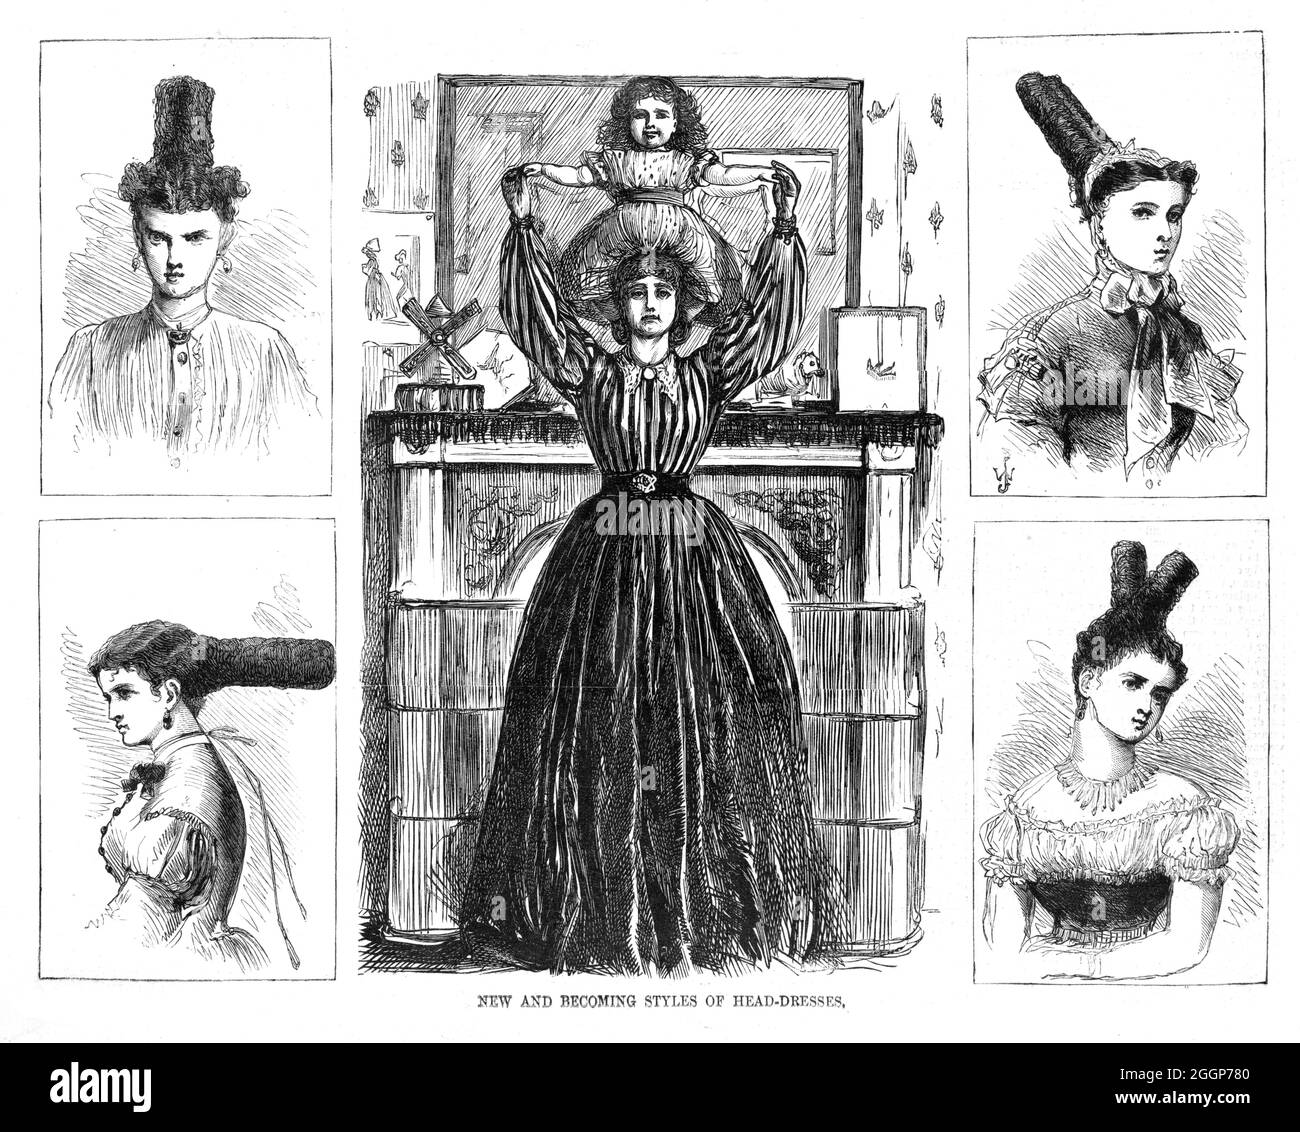 Nuovi e divenendo stili di headdresses, cartoon satirico di Thomas Nast (1840-1902). Al centro, una donna tiene un bambino sulla testa, circondato da quattro vignette viste di 'nuovi' acconciature. Harper's Weekly, 1867. Foto Stock